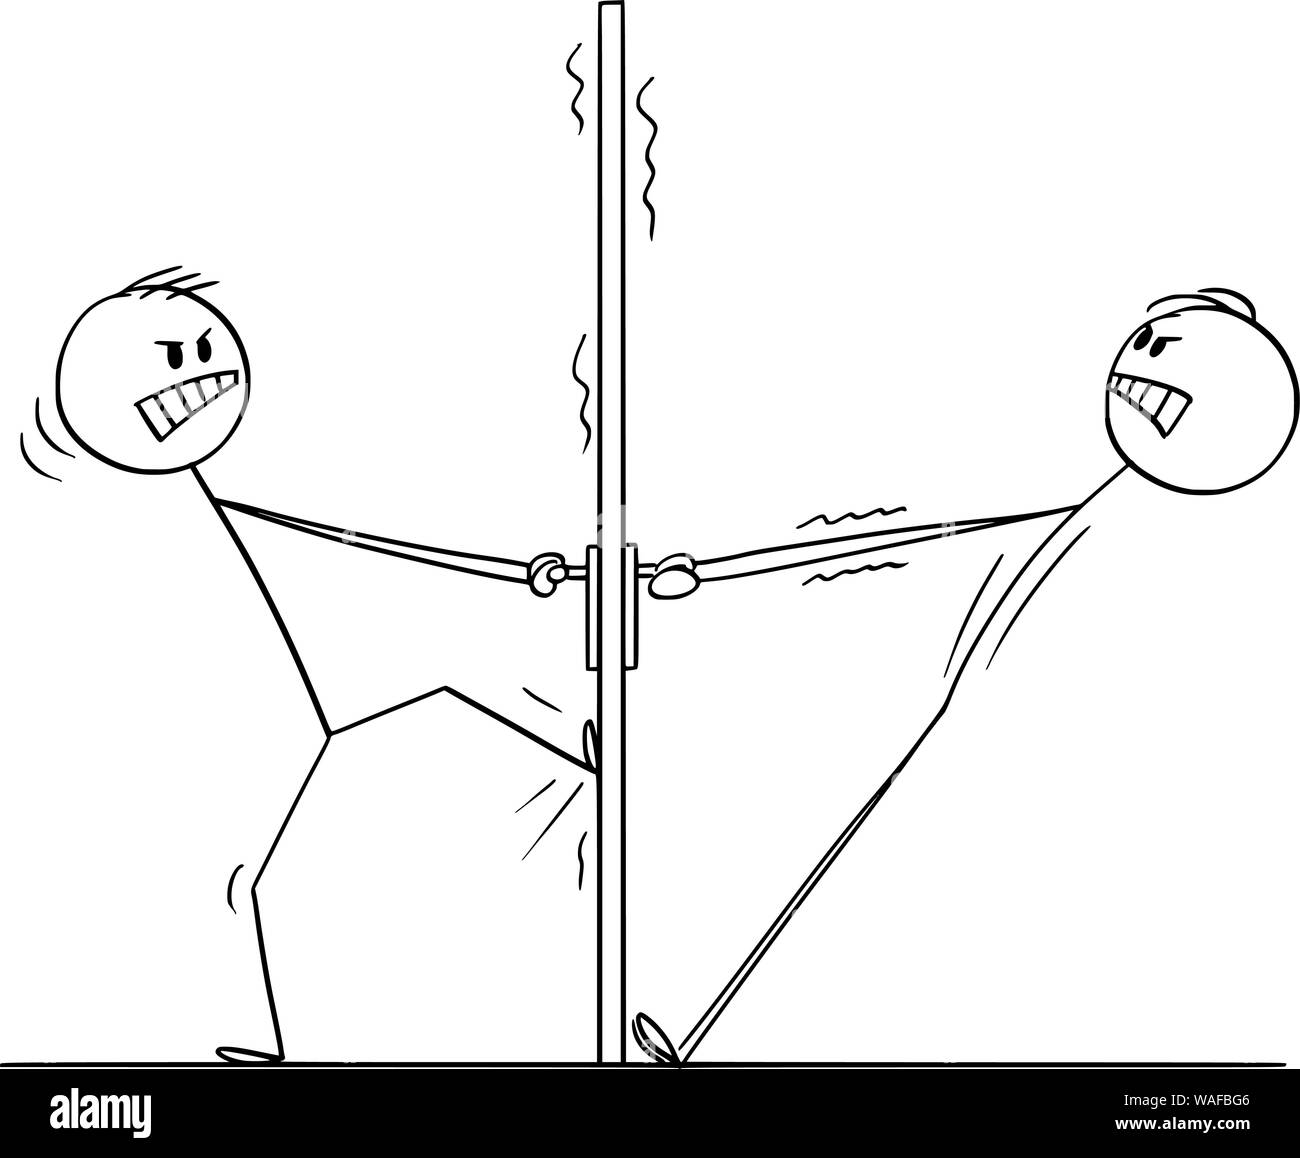 Vektor cartoon Strichmännchen Zeichnung konzeptuelle Abbildung von zwei wütenden Männern oder Geschäftsleute, die versuchen, die Tür von beiden Seiten zu öffnen und nicht kooperieren. Stock Vektor